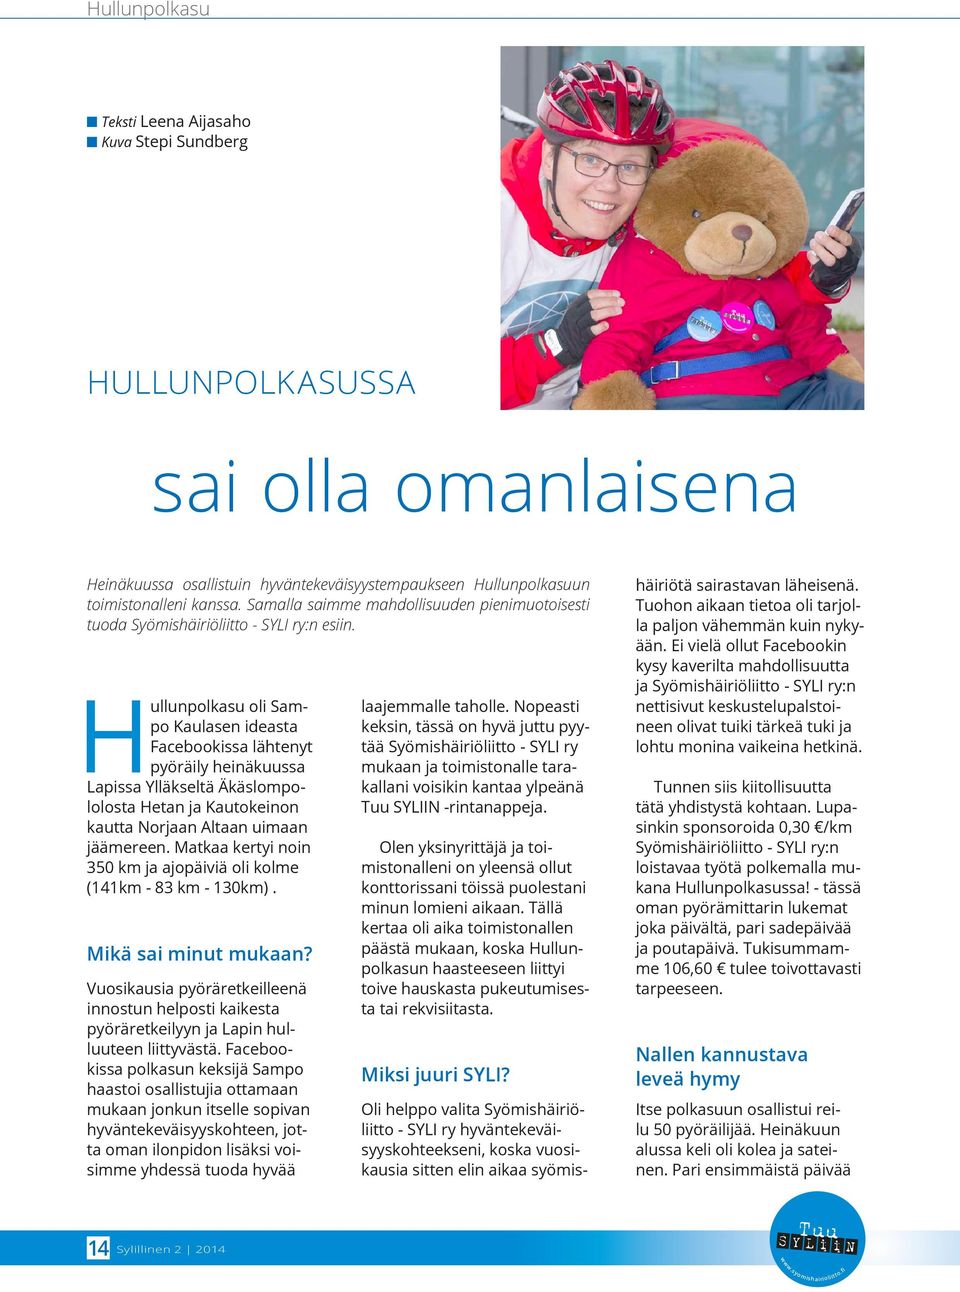 Hullunpolkasu oli Sampo Kaulasen ideasta Facebookissa lähtenyt pyöräily heinäkuussa Lapissa Ylläkseltä Äkäslompololosta Hetan ja Kautokeinon kautta Norjaan Altaan uimaan jäämereen.